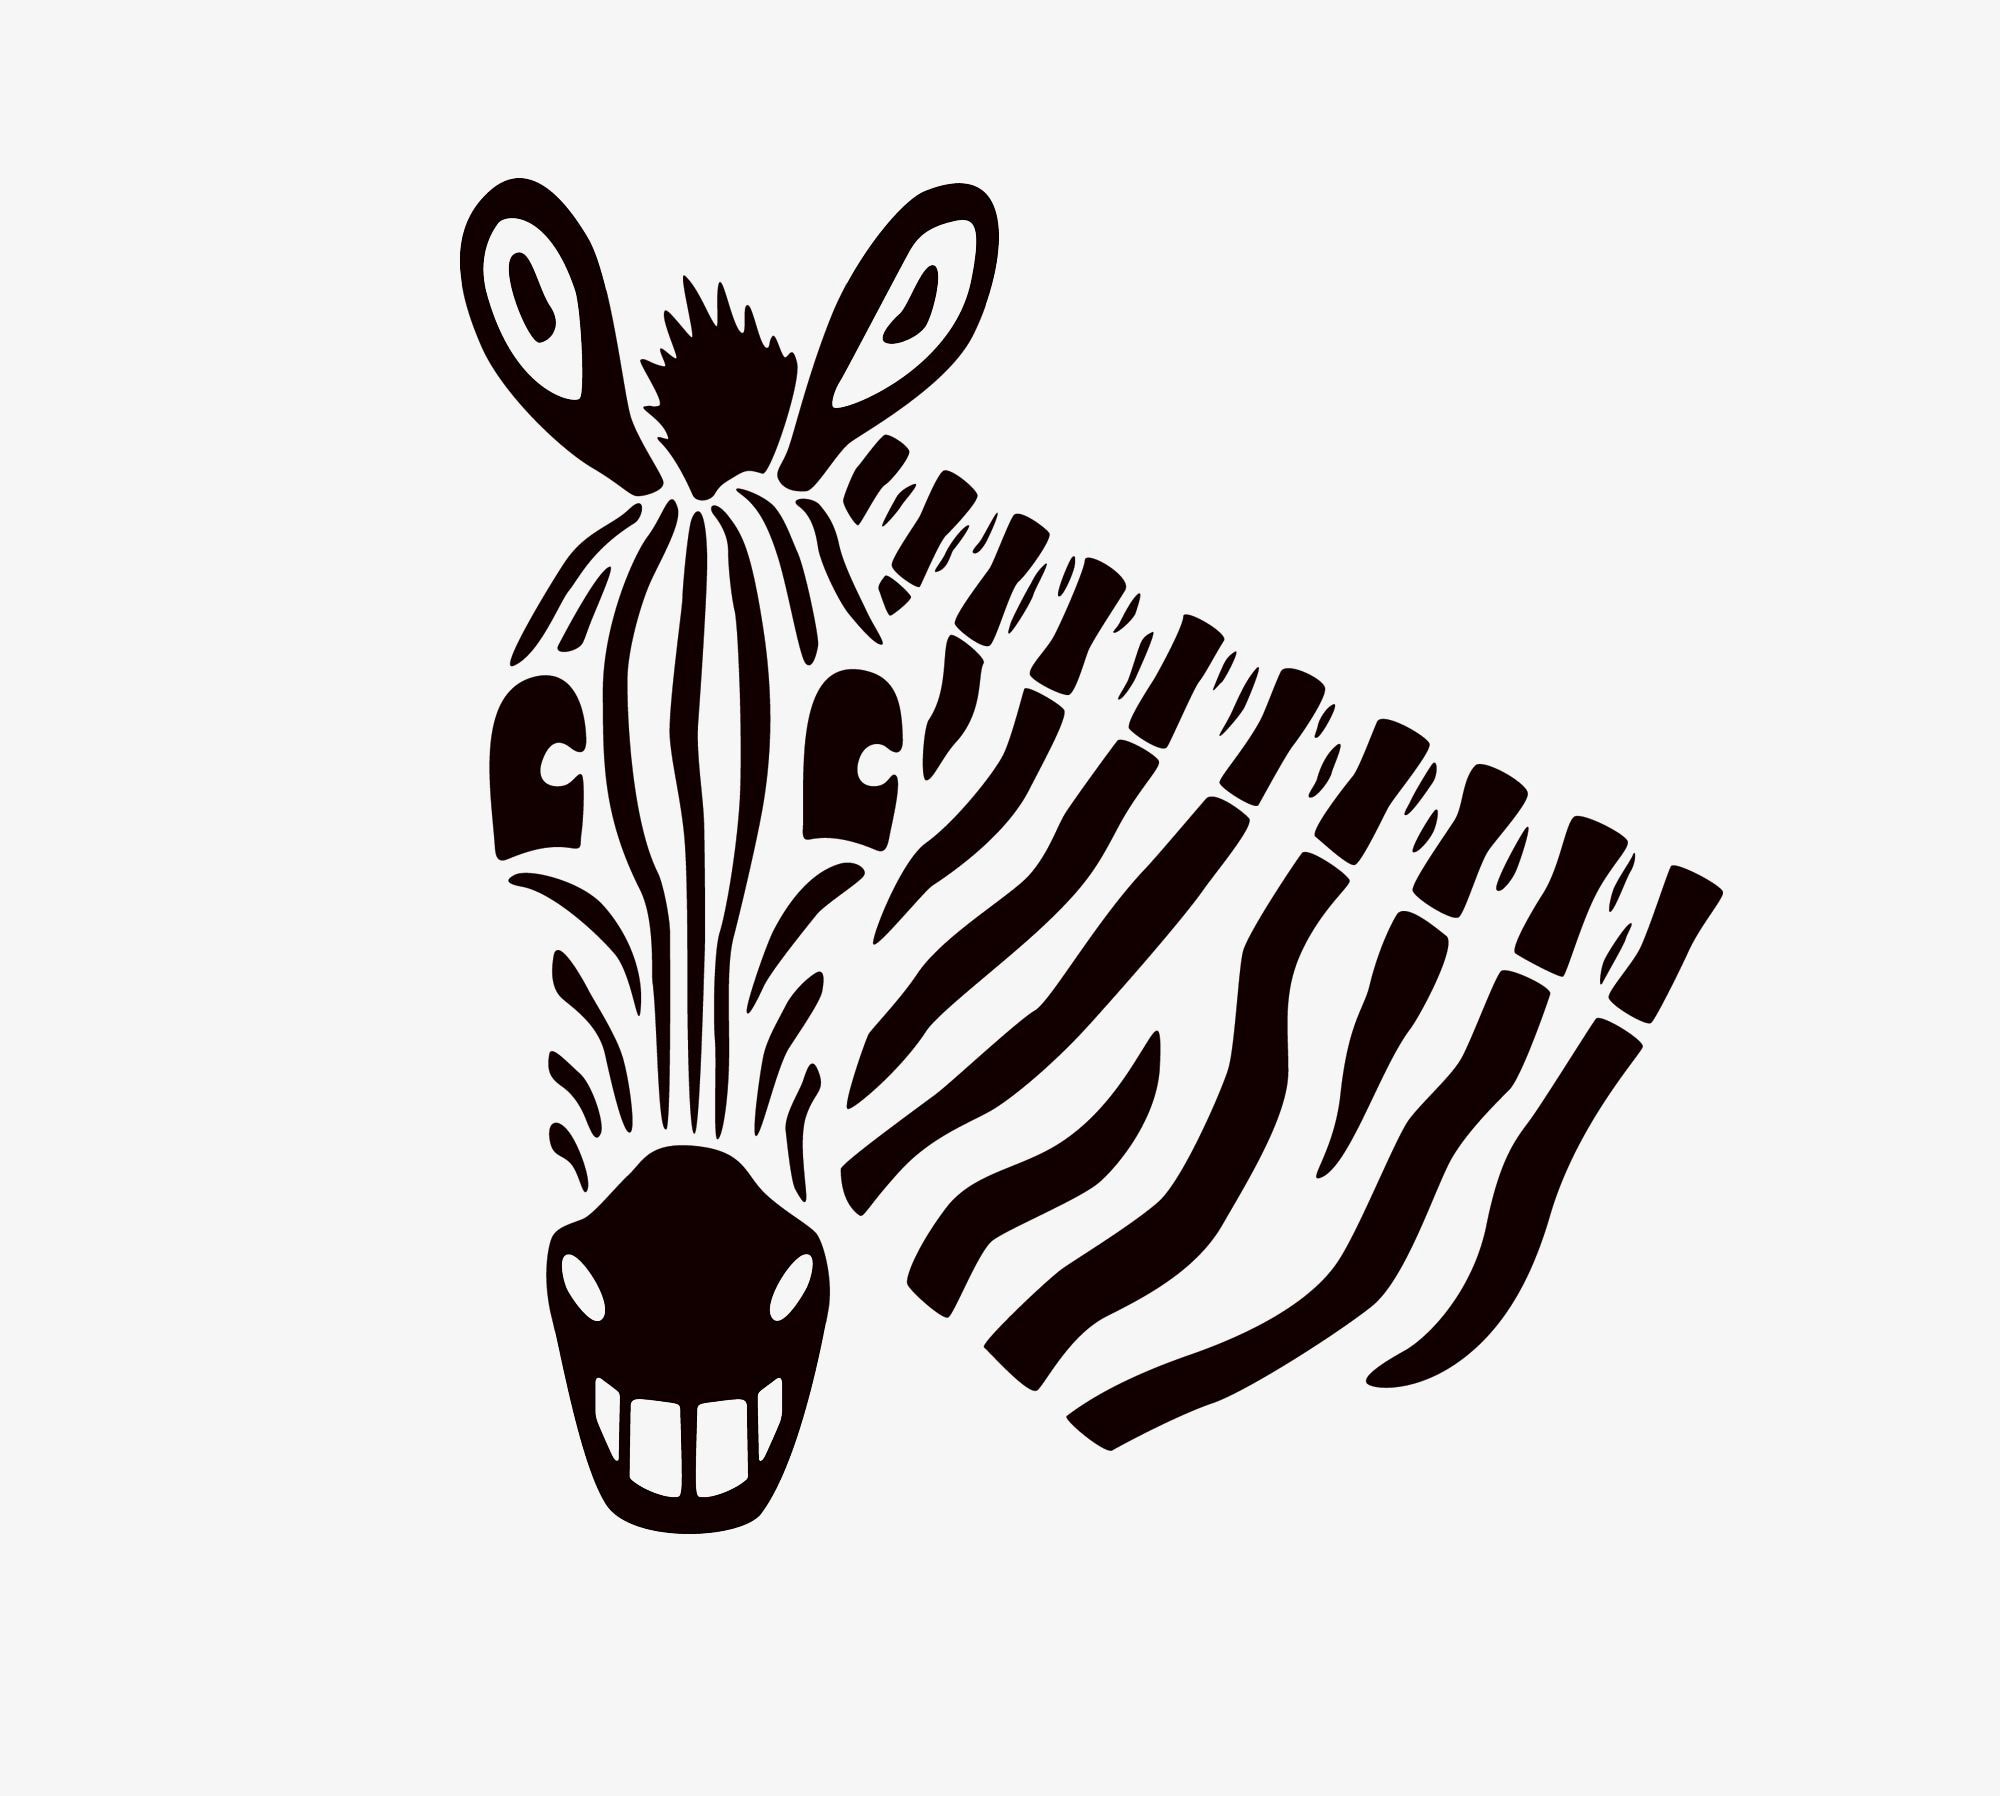 Illustration of a smiling zebra.